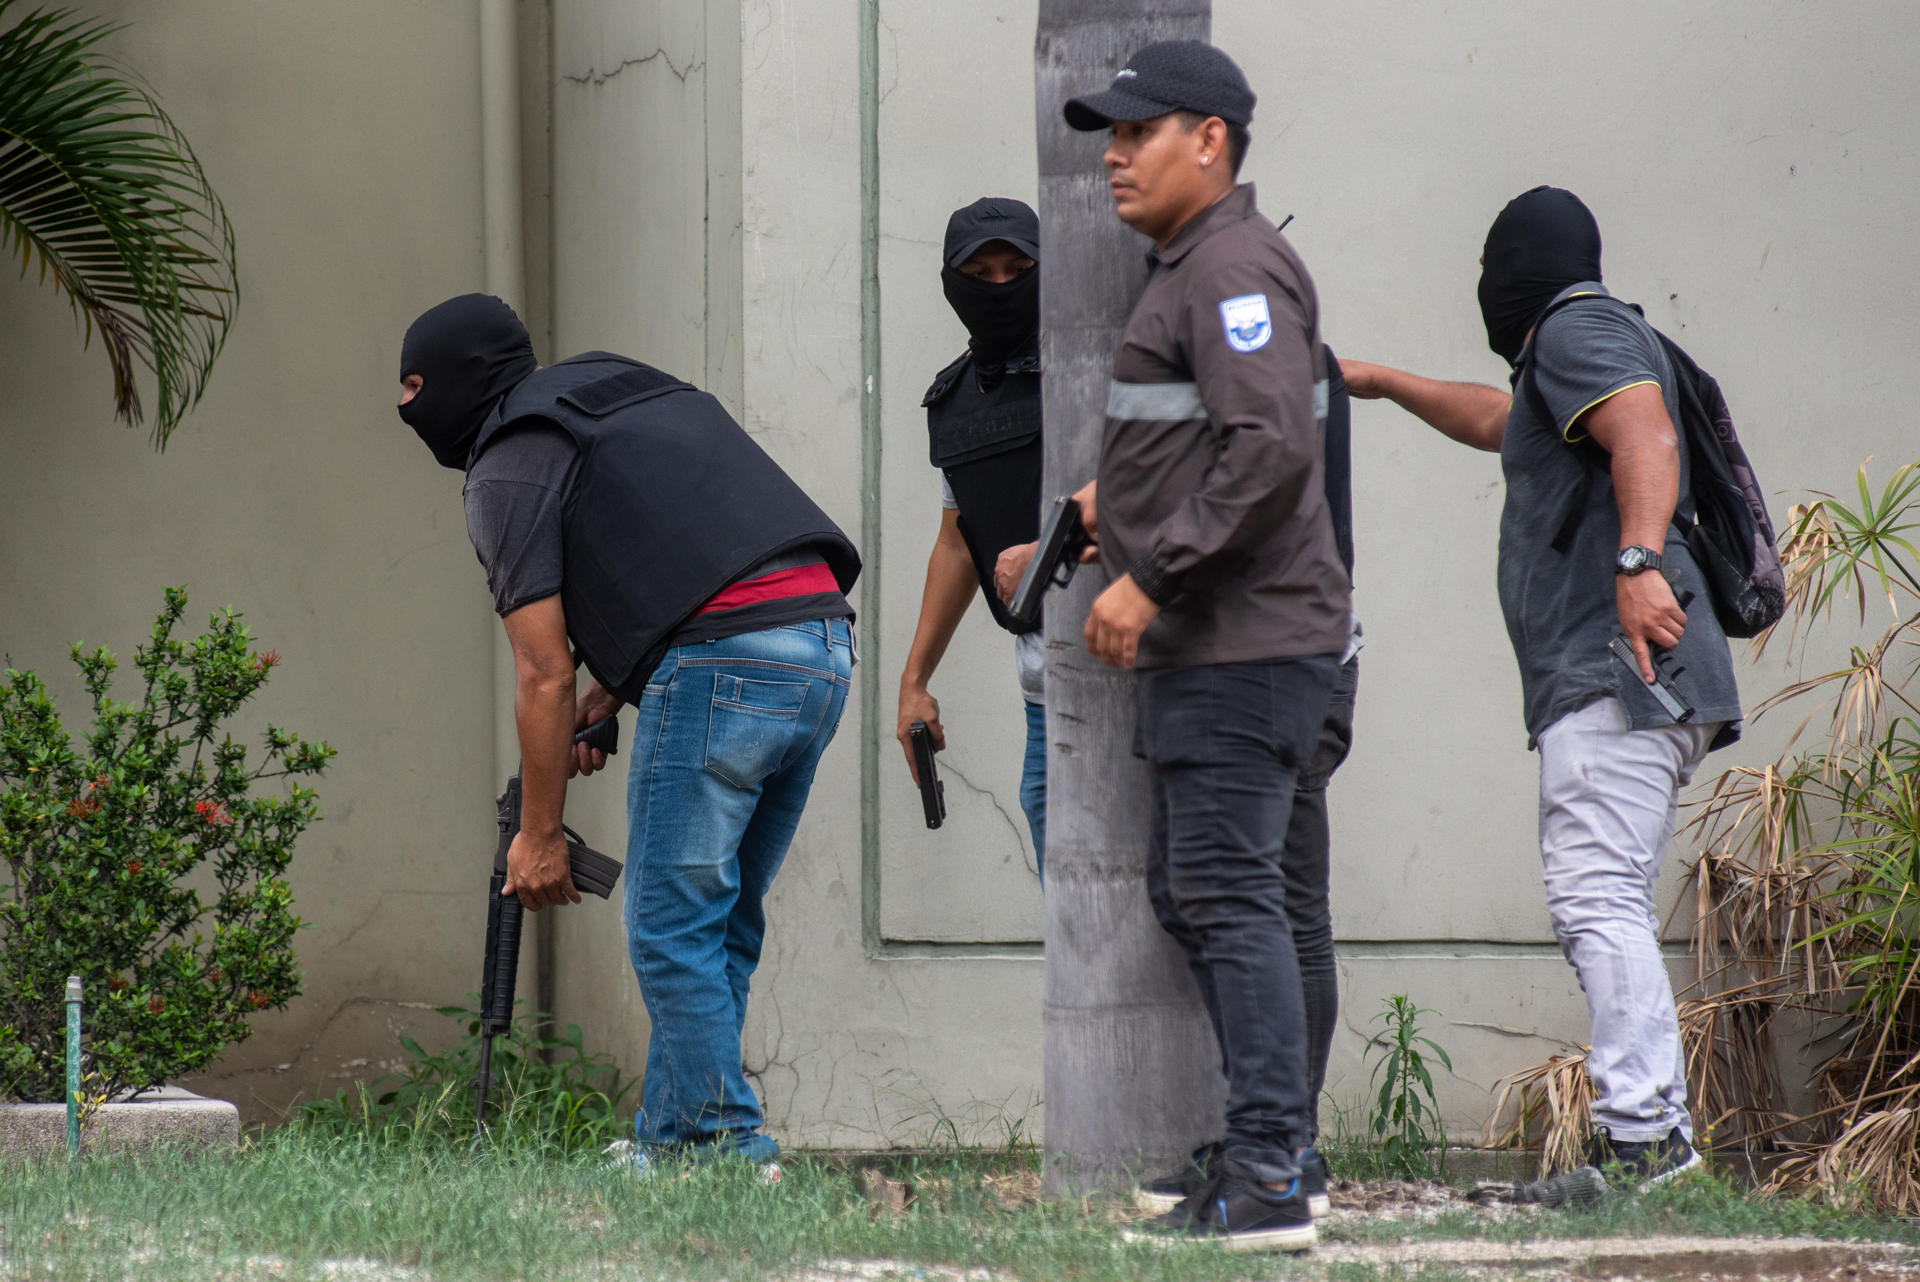 Ecuador en conflicto armado interno tras caos en cárceles y ocupación armada de un canal de televisión